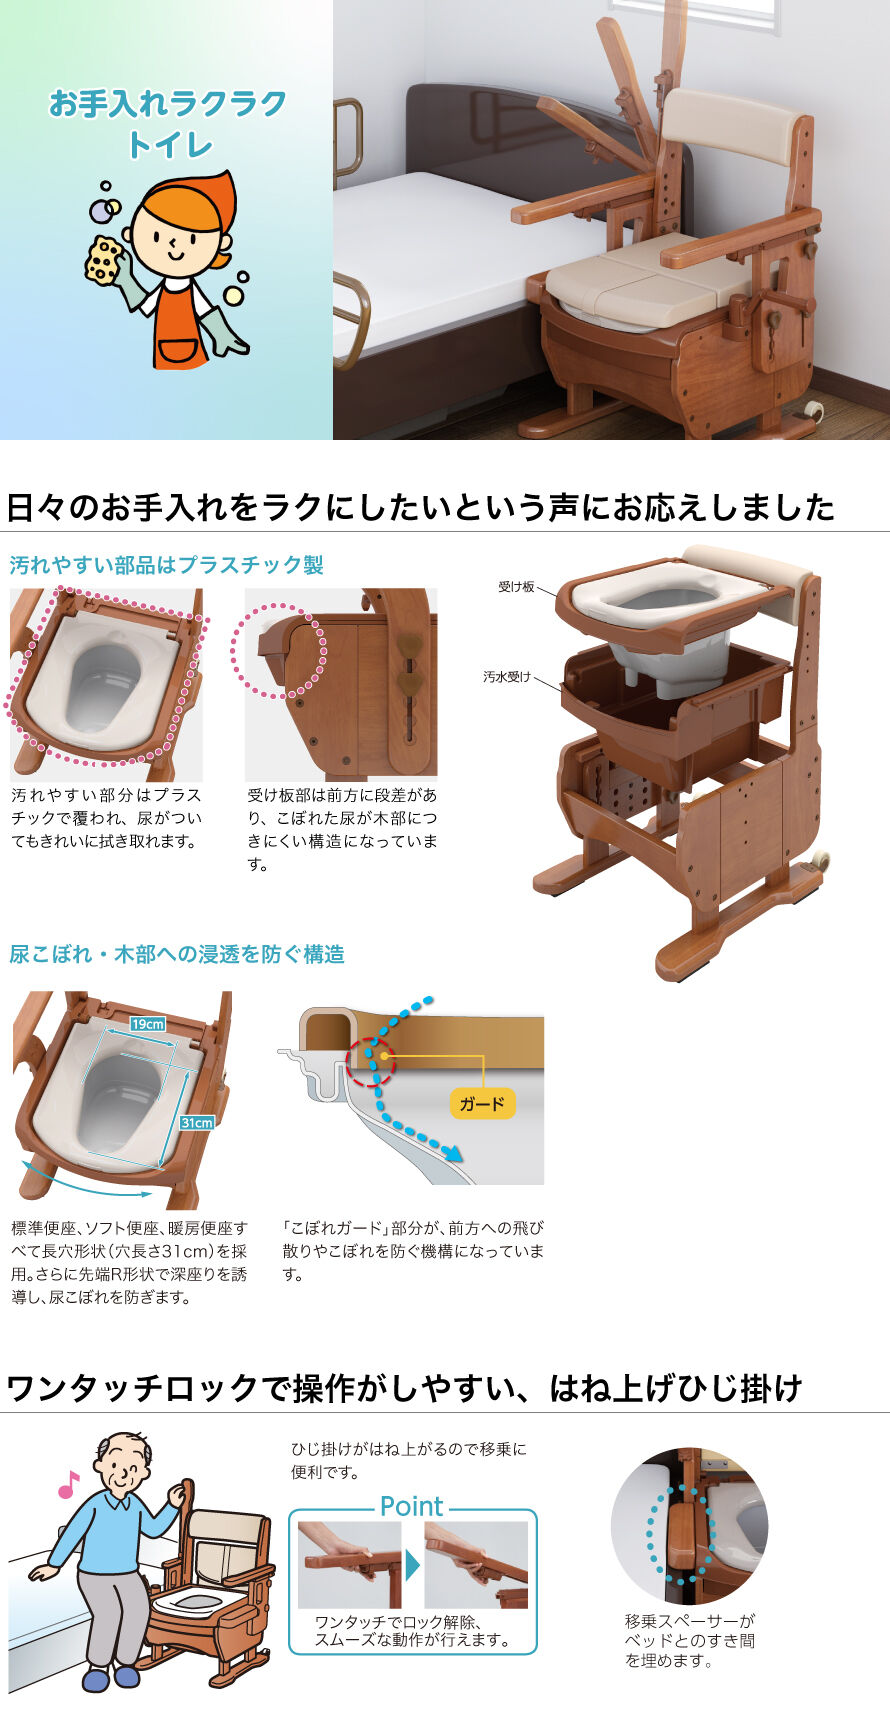 アロン化成 安寿 家具調トイレ AR-SA1 ひじ掛けはねあげタイプ 高さL